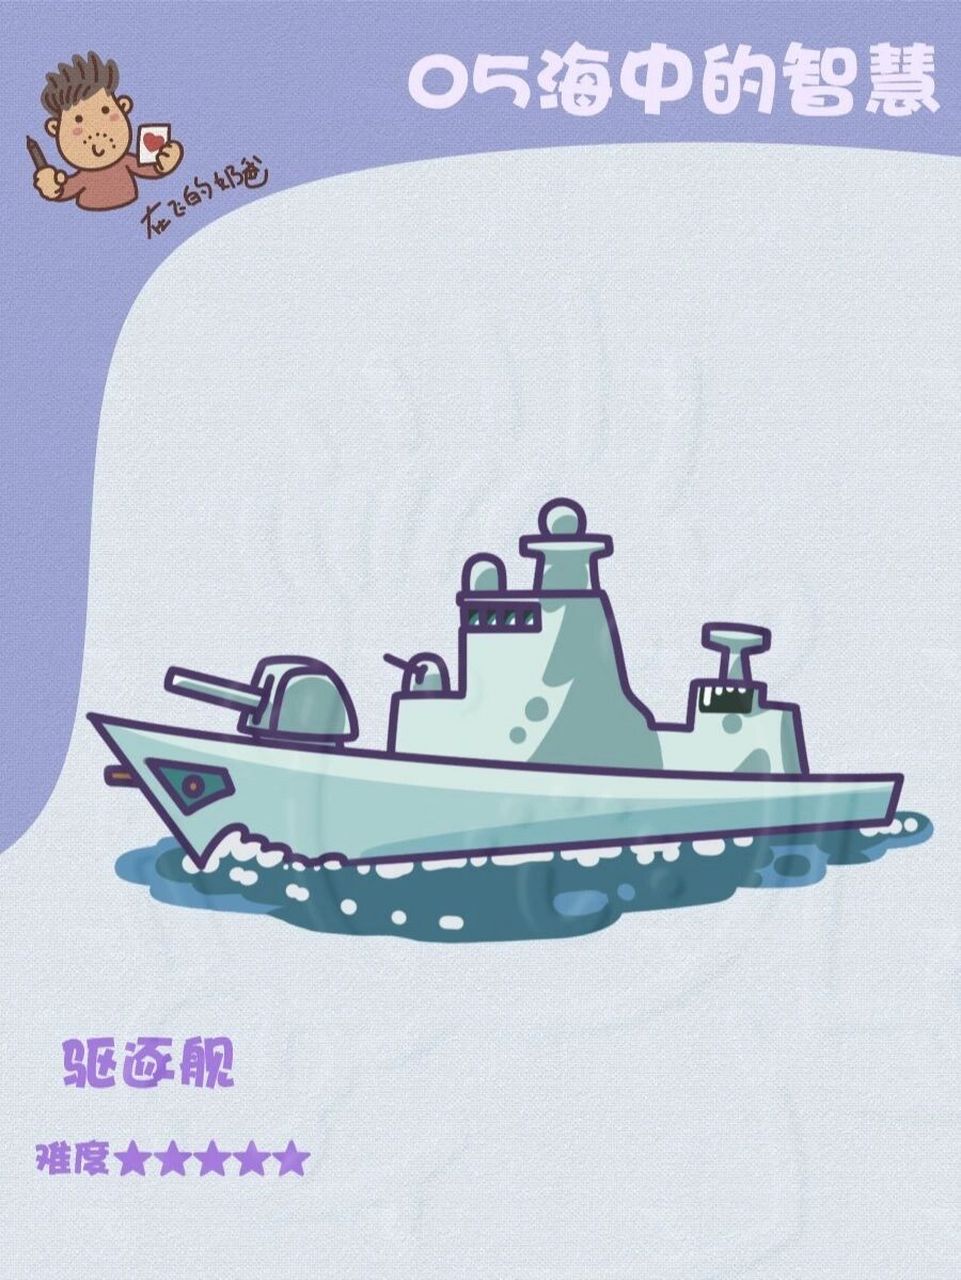 驱逐舰简笔画图片图片